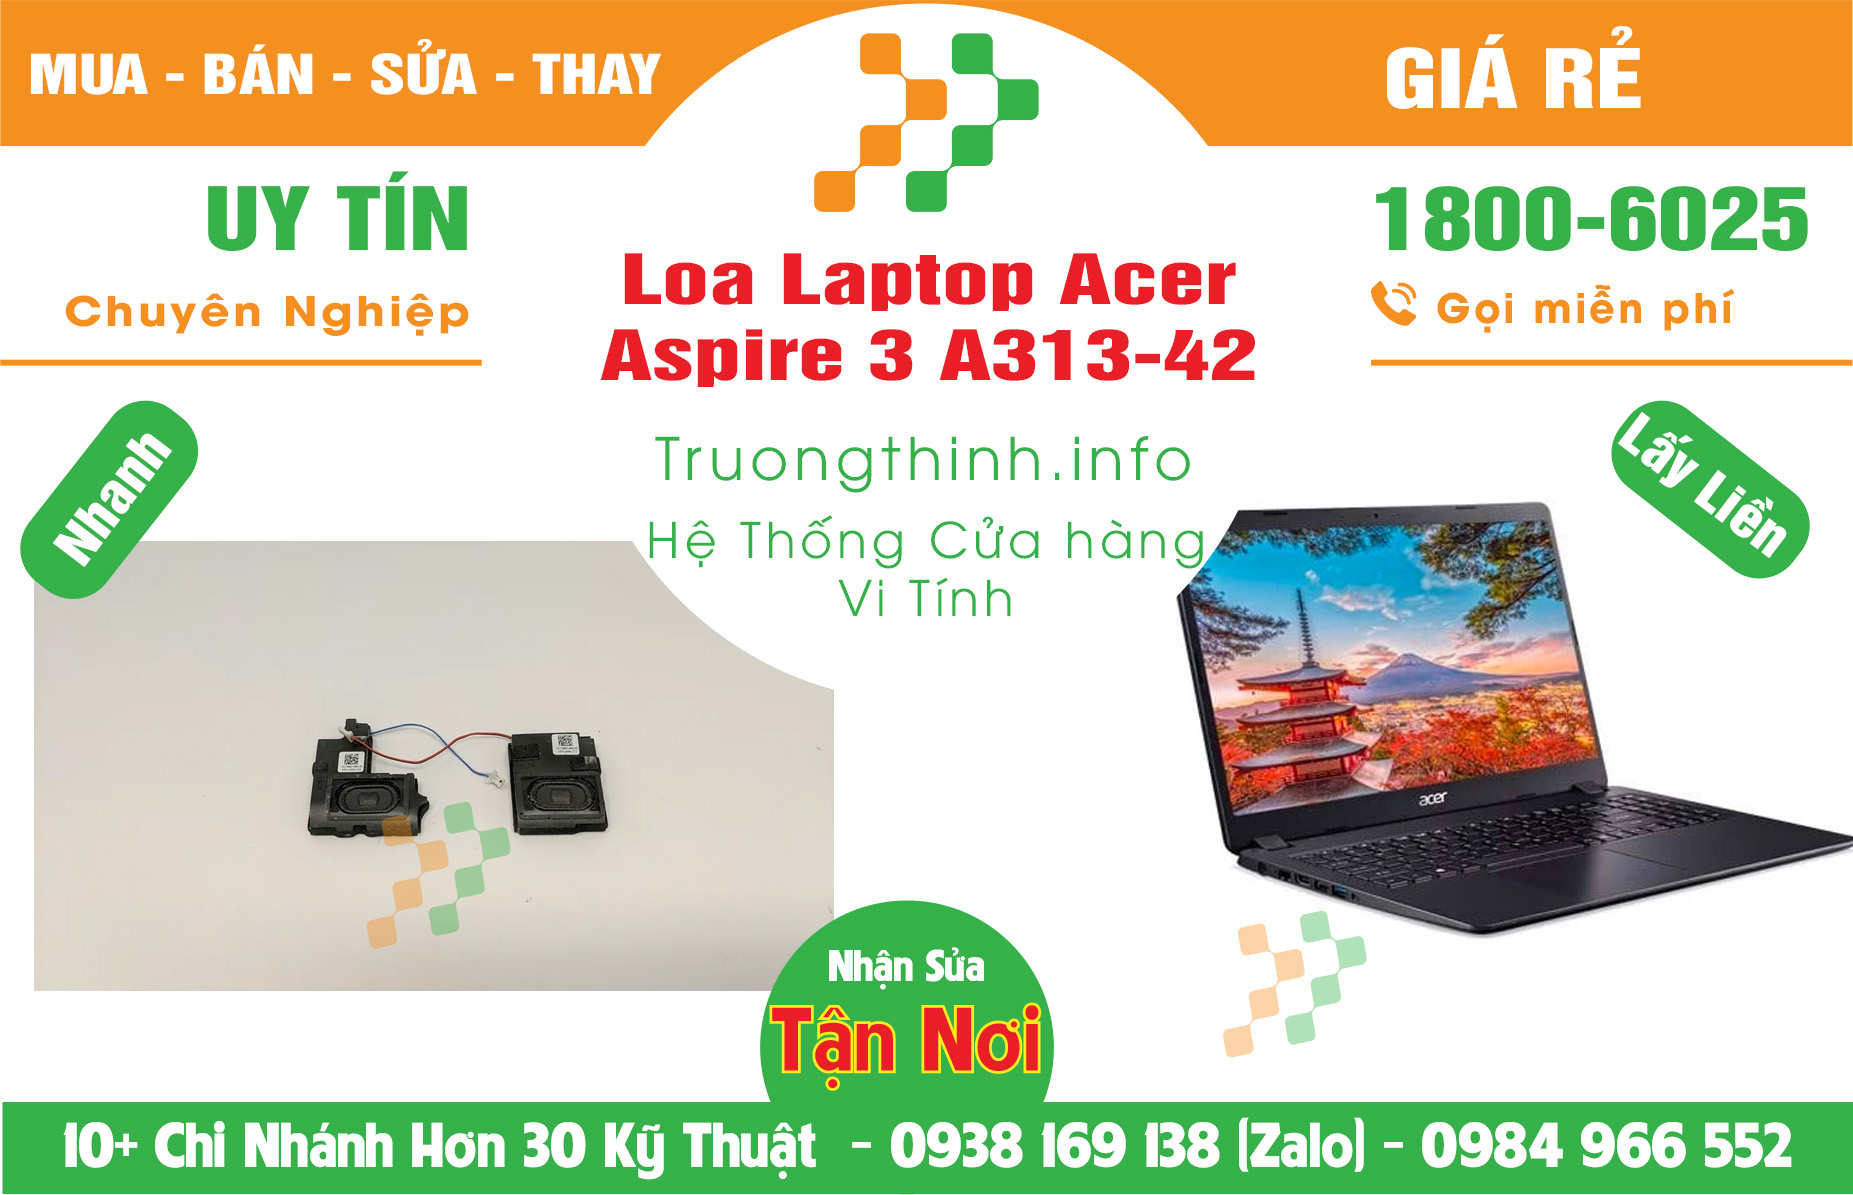 Mua Bán Loa Laptop Acer Aspire 3 A313-42 Giá Rẻ | Máy Tính Trường Thịnh Giá Rẻ